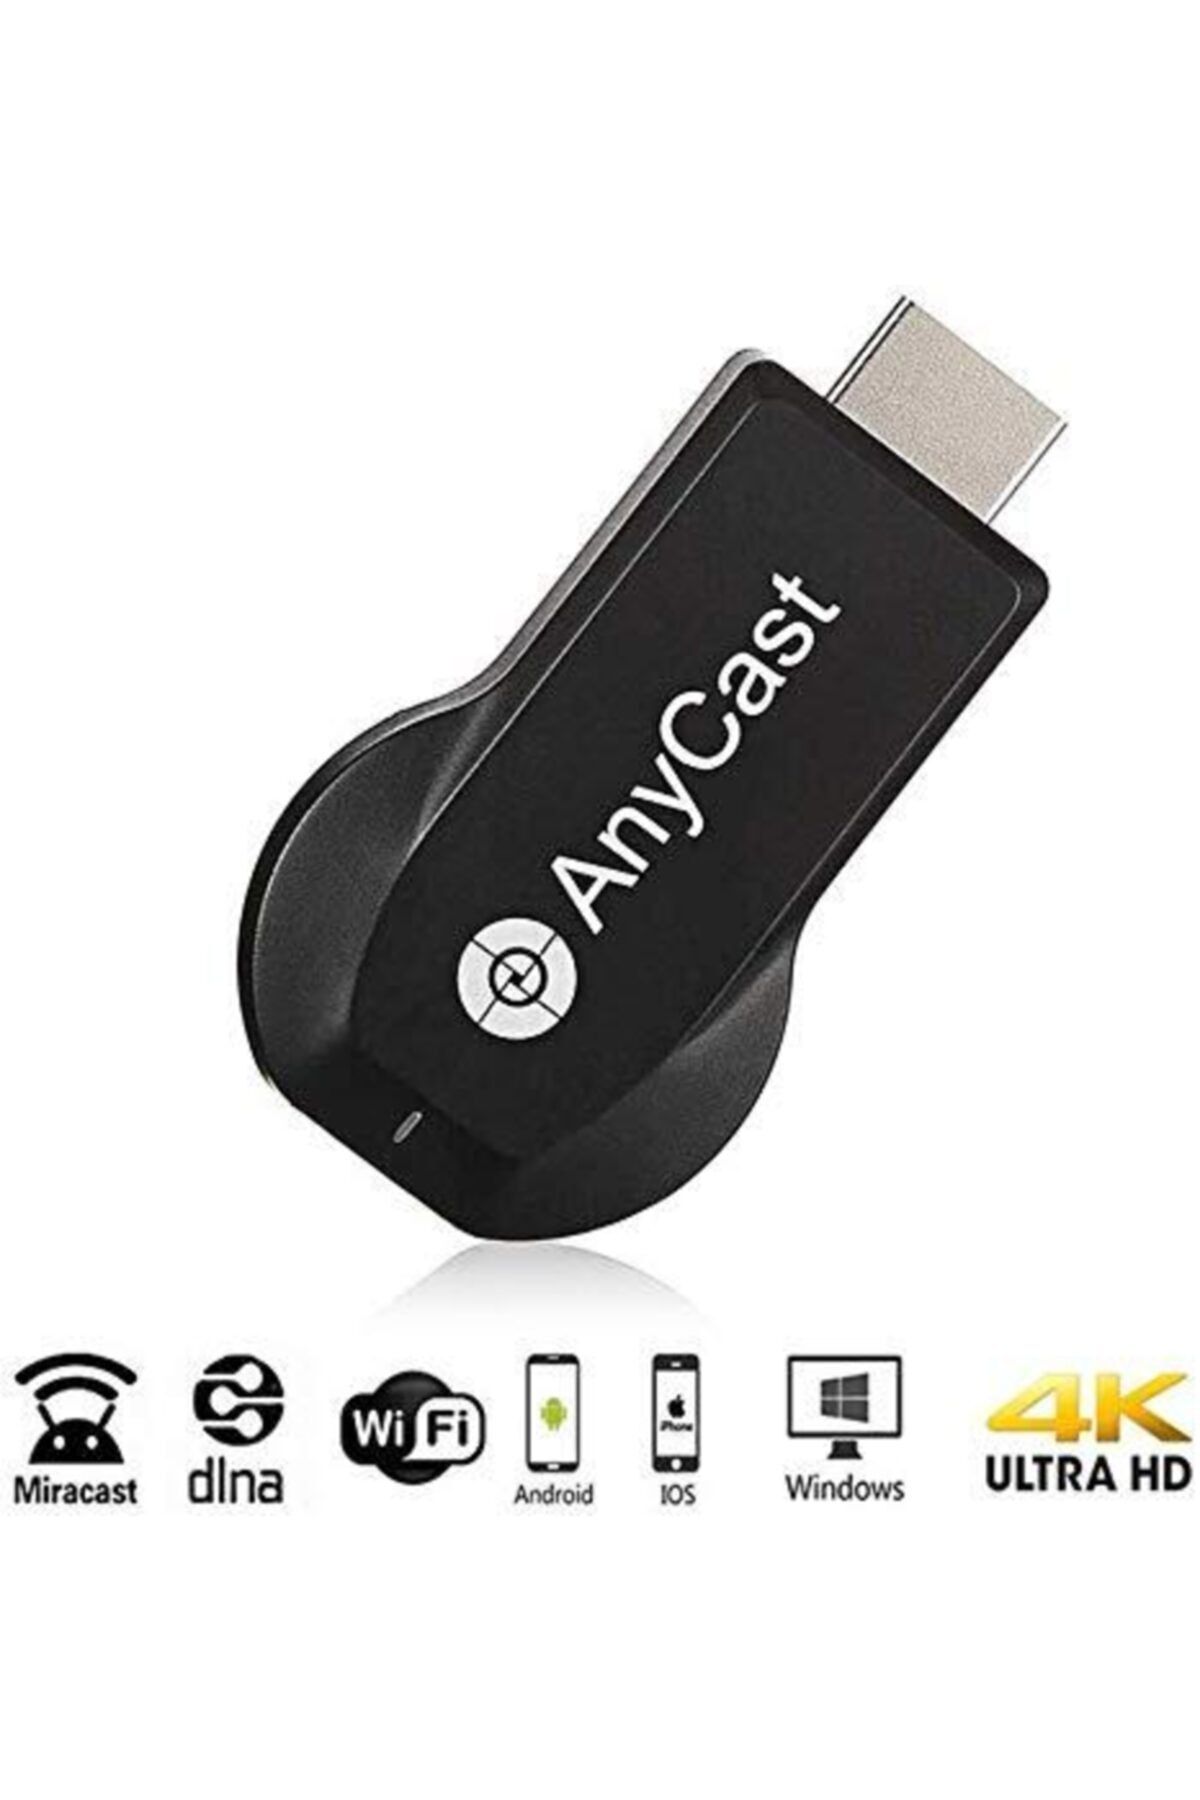 Anycast M100 Ultra Hd Görüntü Aktarım Cihazı 2.4 Ghz Dongle